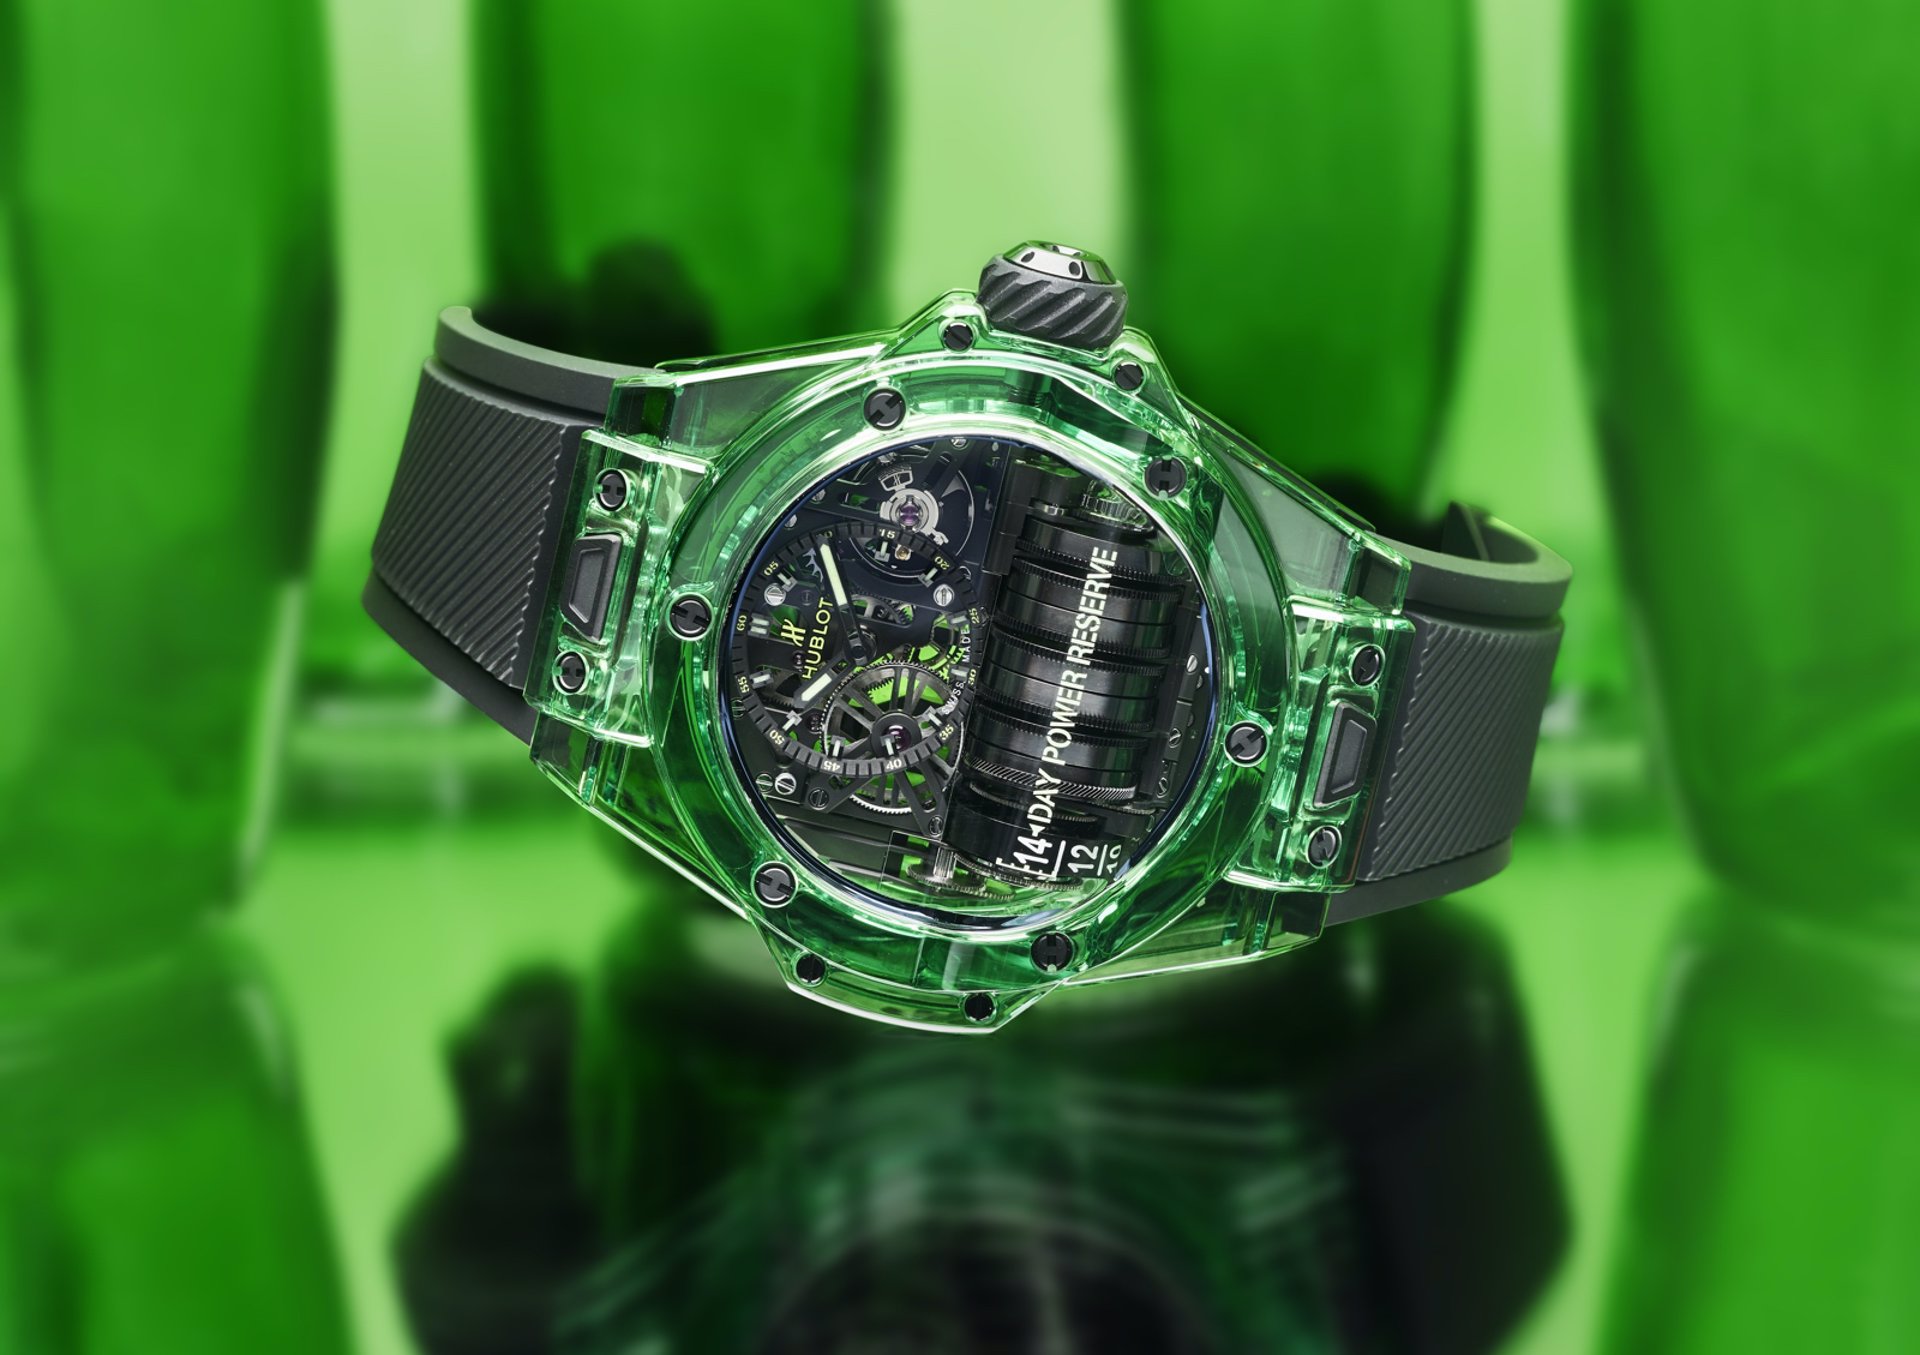 Reloj Hublot Big Bang MP 11 SAXEM en verde esmeralda,  la tendencia del 2020, 20 unidades exclusivas a casi 130.000 euros